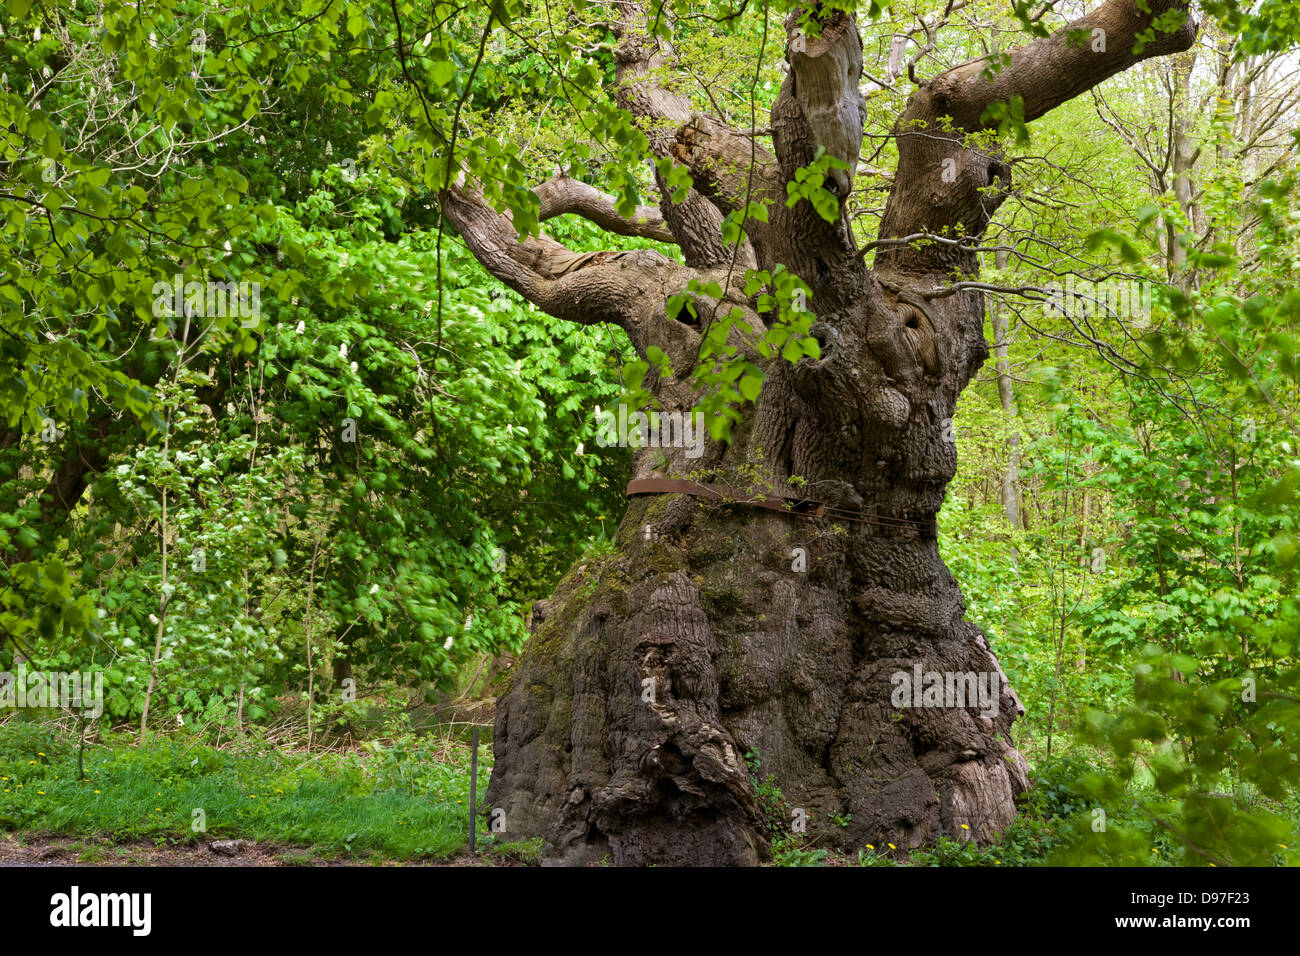 Plus de 1000 ans, le gros ventre le chêne est l'arbre le plus ancien dans la forêt Savernake, Marlborough, Wiltshire, Angleterre. Banque D'Images